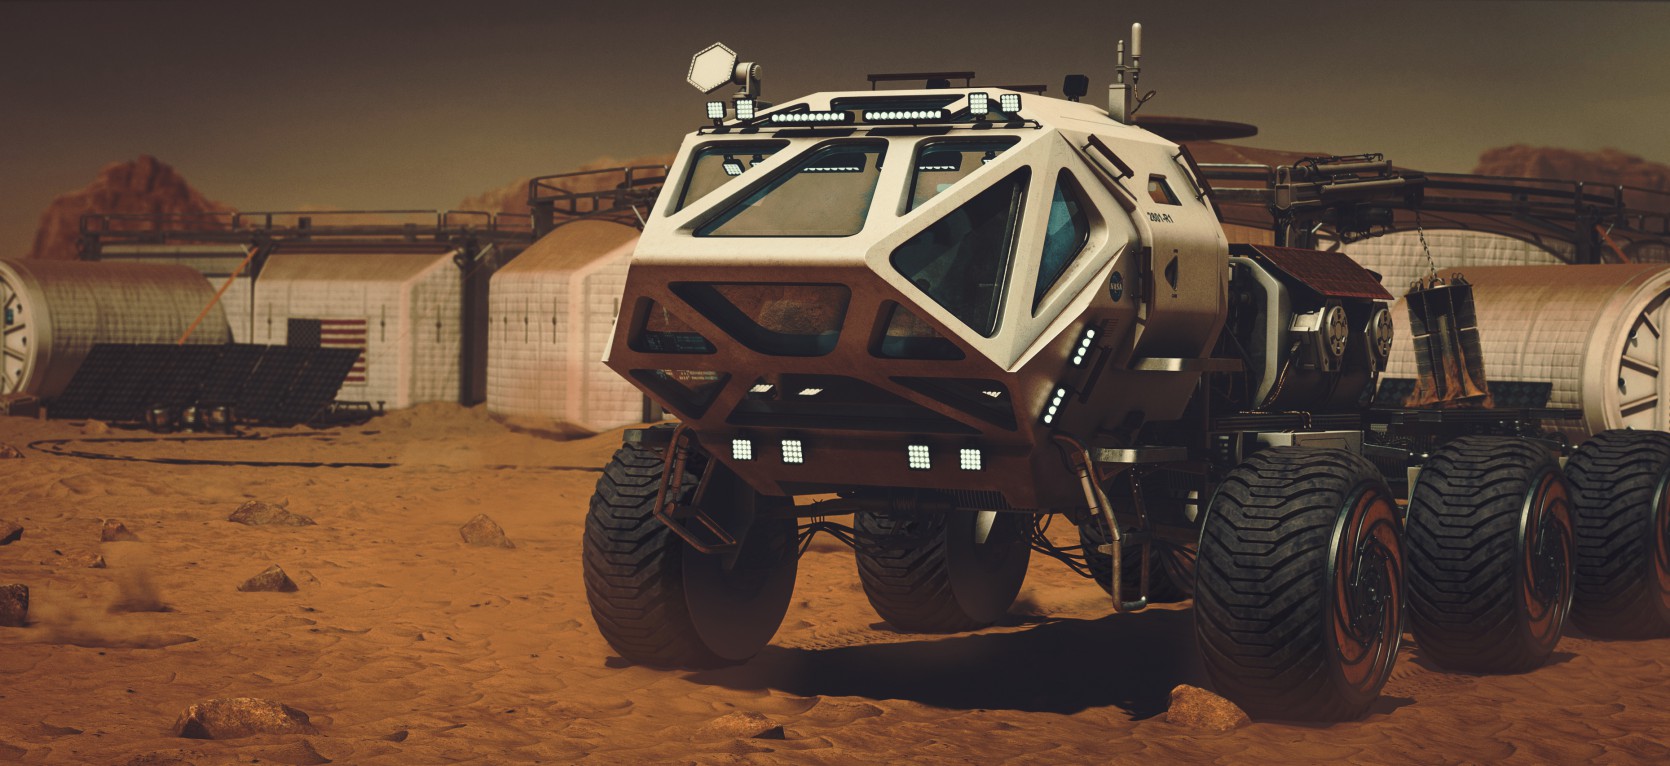 The Martian Rover 1.